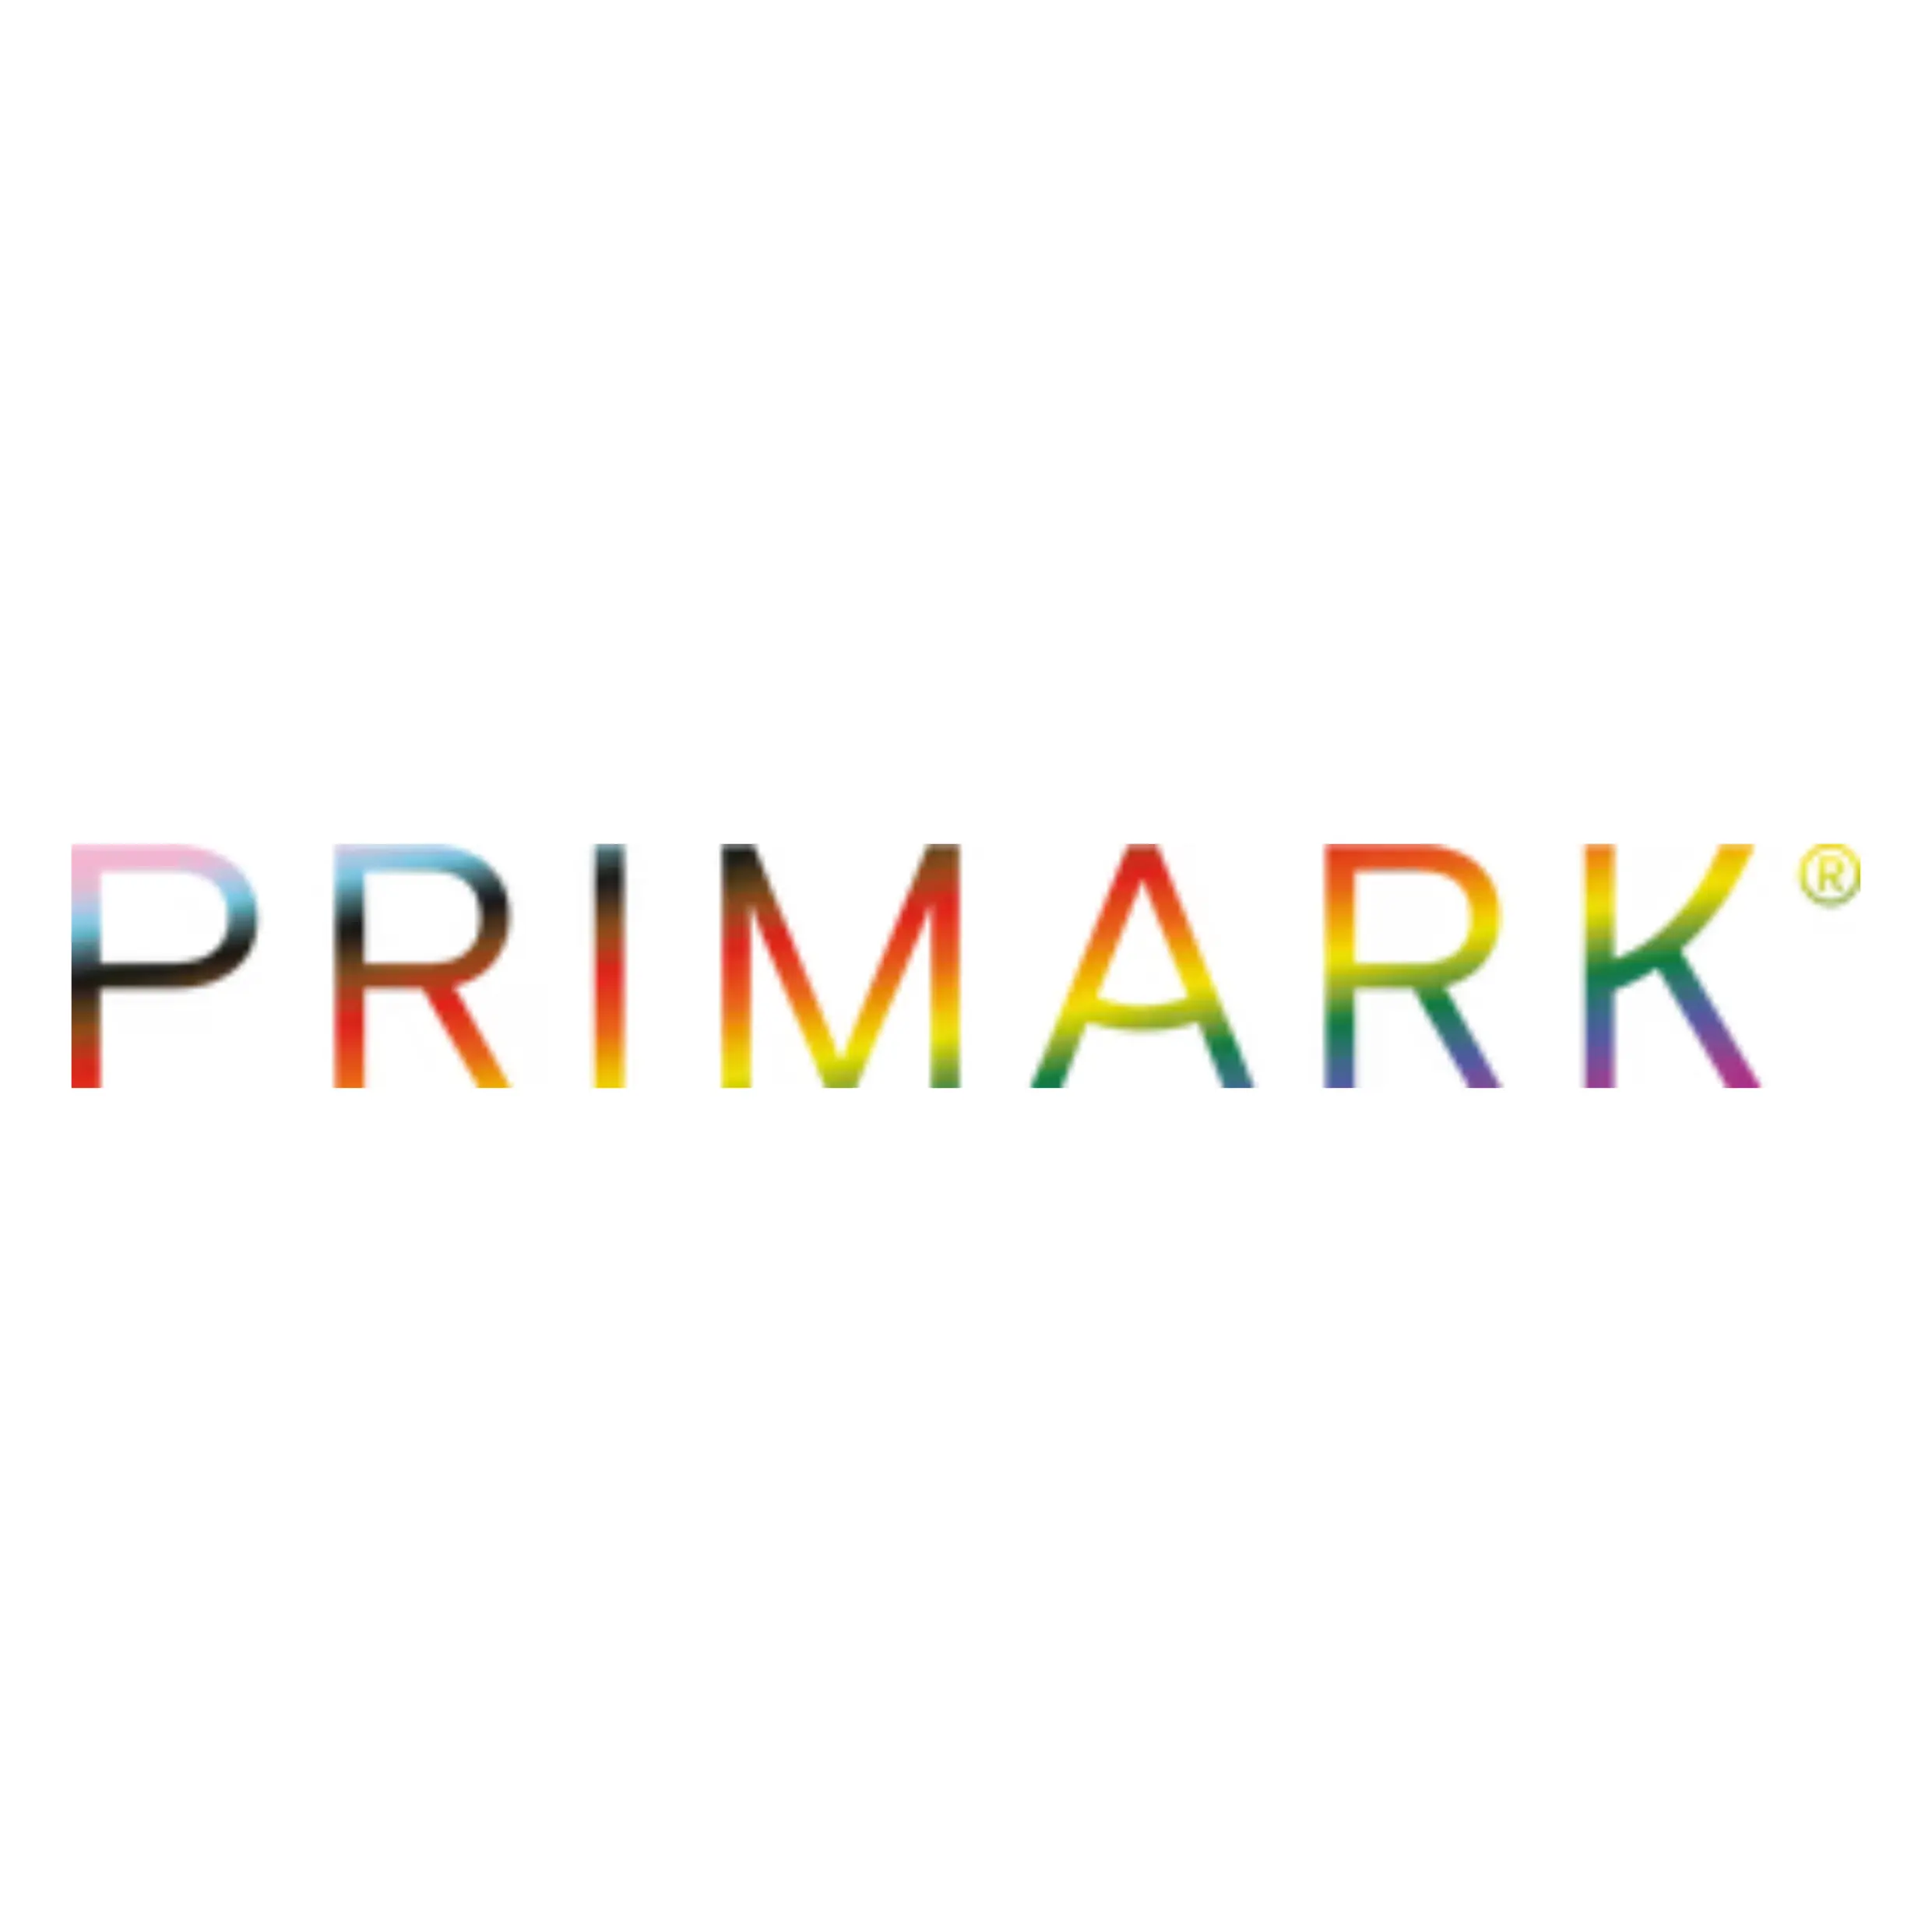 Day 4 sponsor: Primark